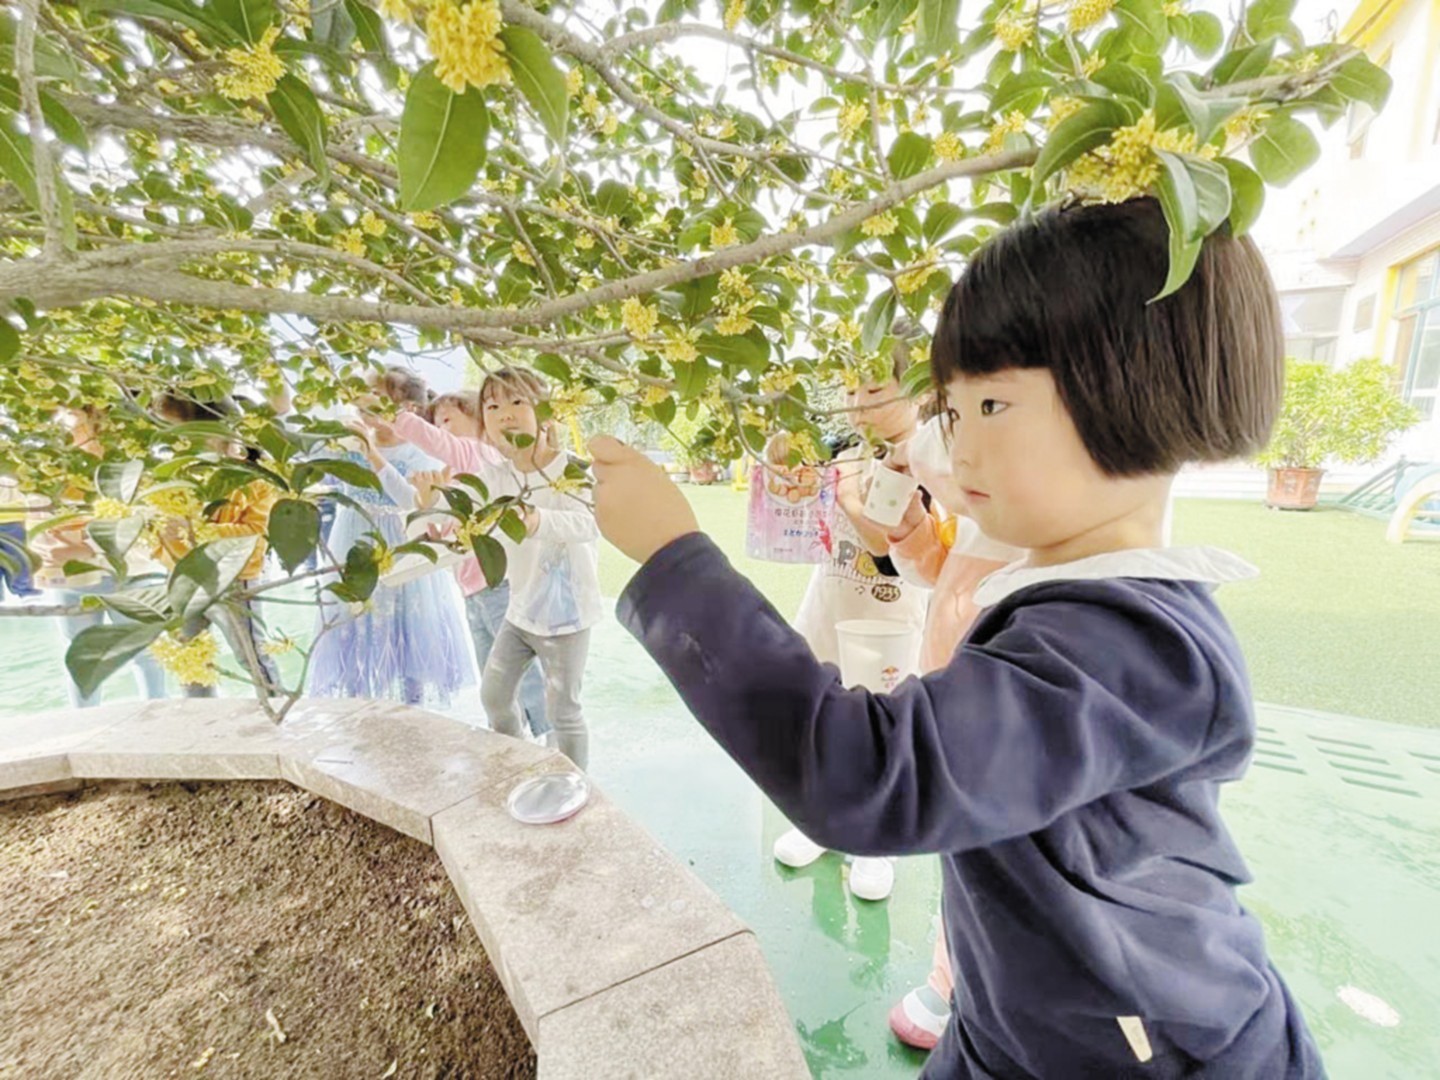 威海经济技术开发区凤林街道中心幼儿园举办“走向大自然”活动